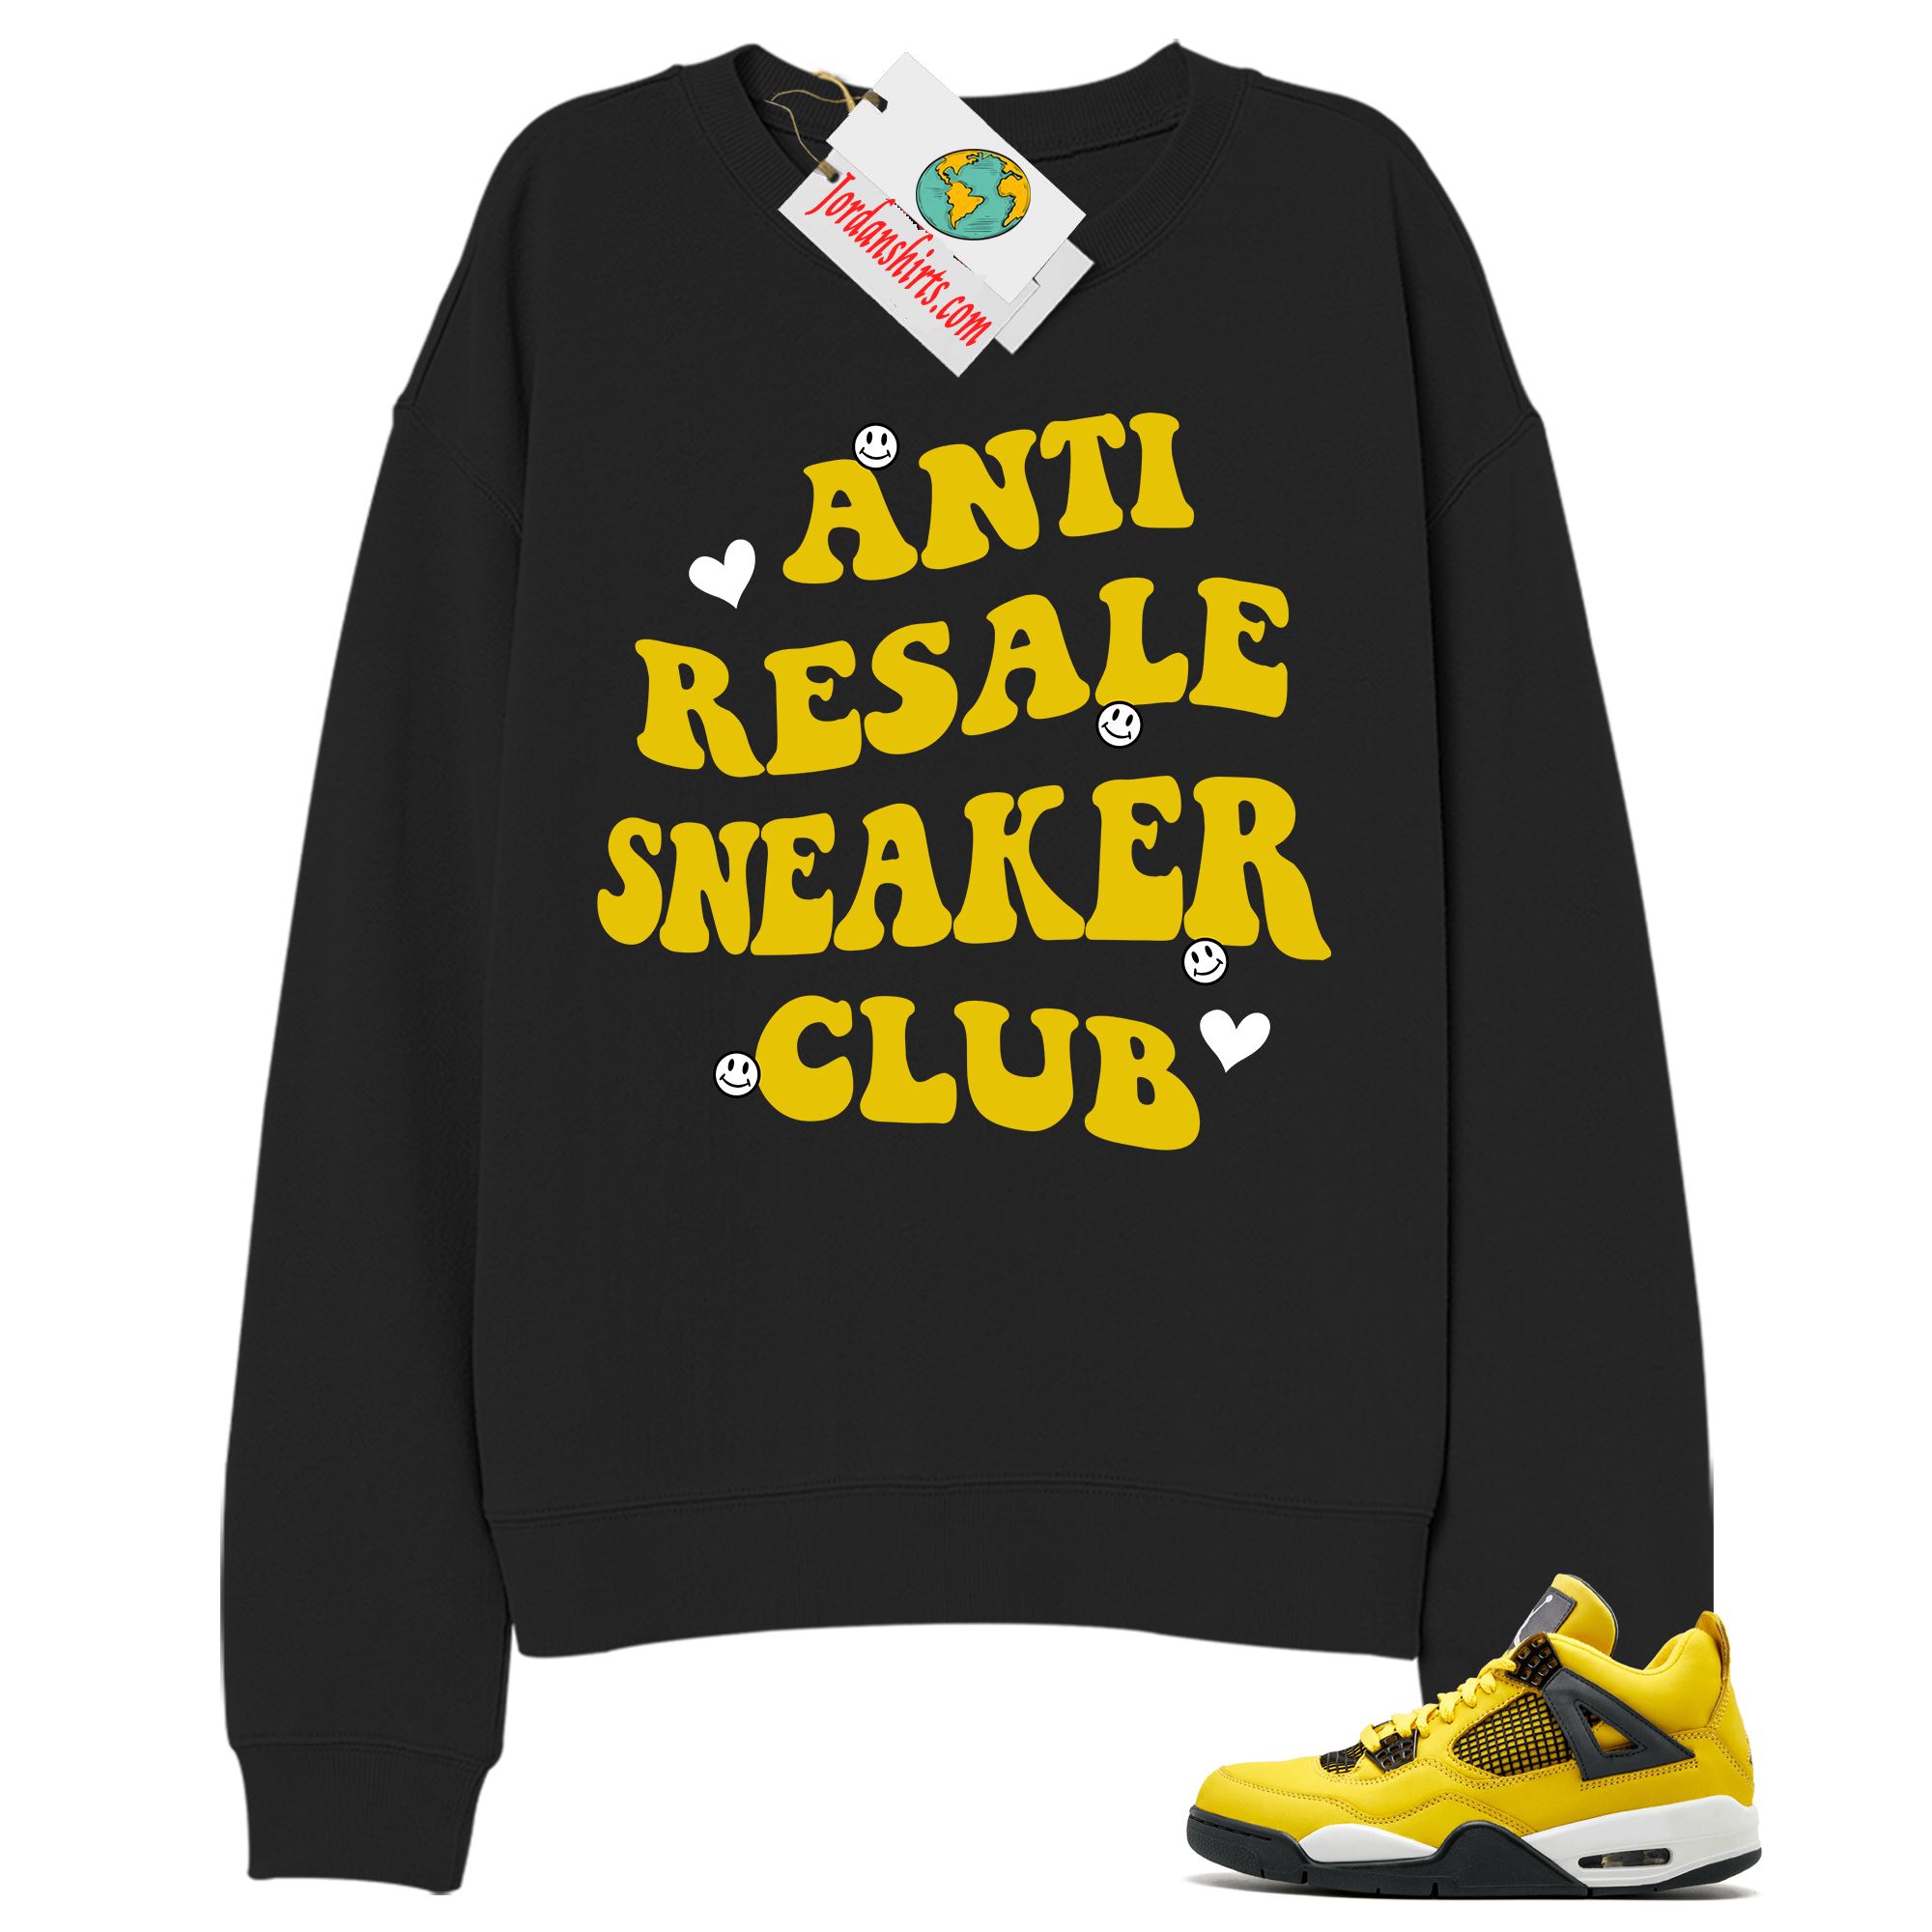 Jordan 4 Sweatshirt, Anti Resale Sneaker Club Black Sweatshirt Air Jordan 4 Tour Yellow Lightning 4s Plus Size Up To 5xl